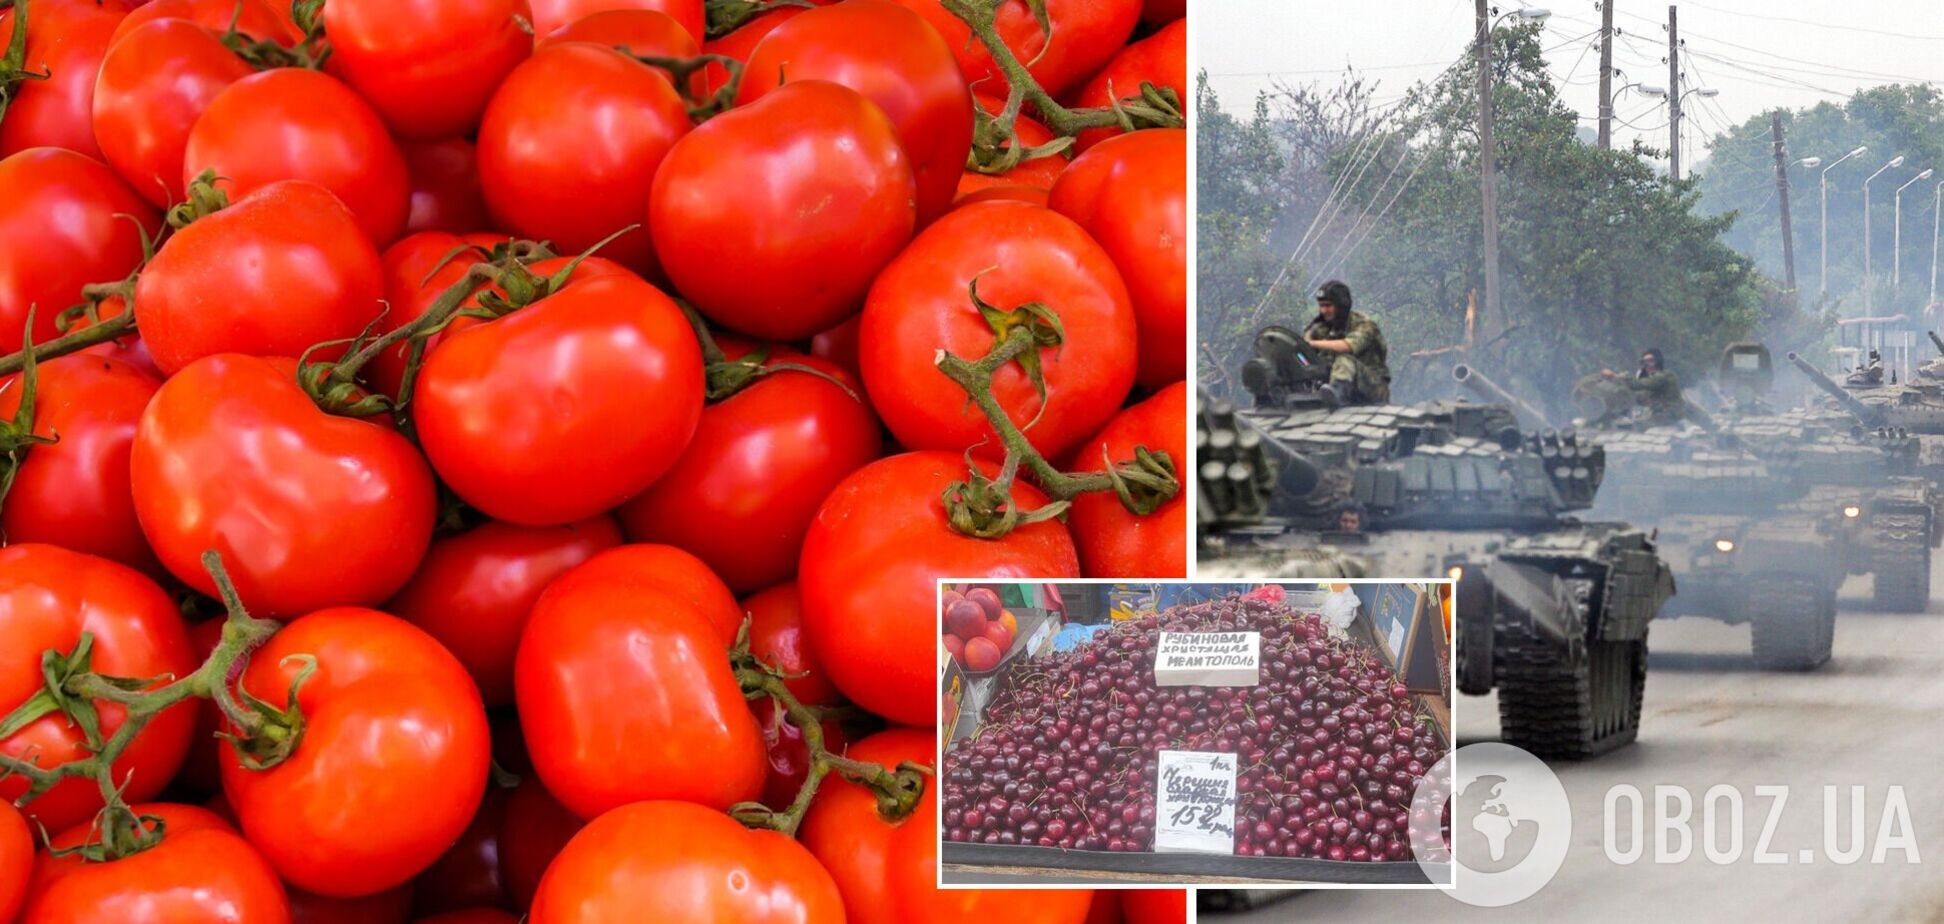 Украденные овощи и фрукты из Украины появились в РБ